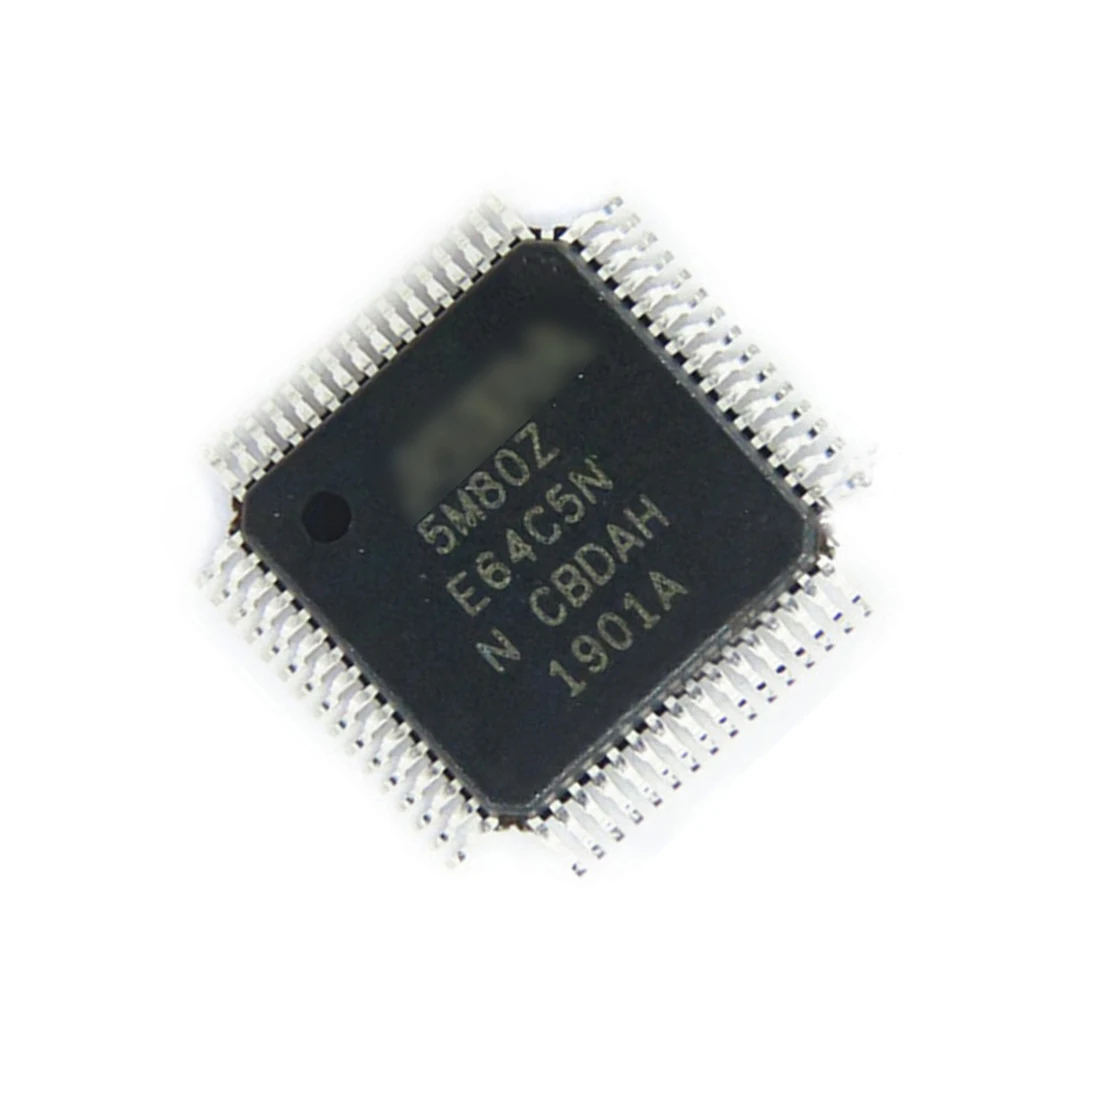 1PCS/lot  5M40ZE64I5N  5M40ZE64C5N     5M40ZE64   QFP  Chipset   100% new imported original